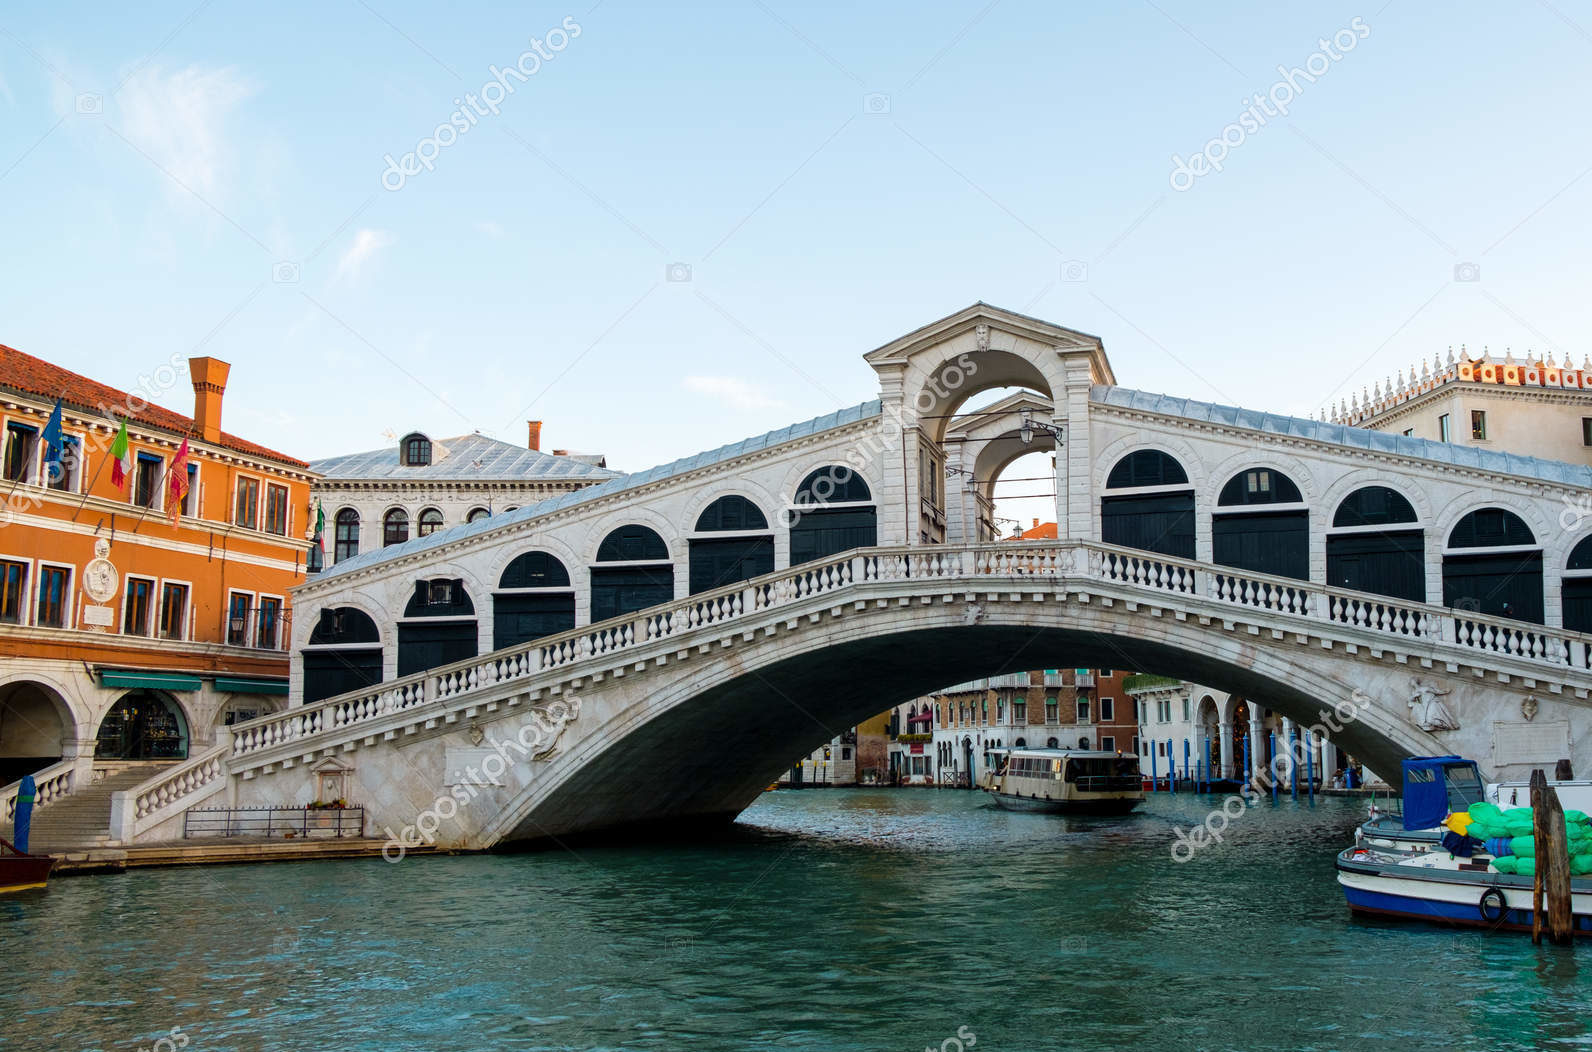 Гранд канал, Венеция